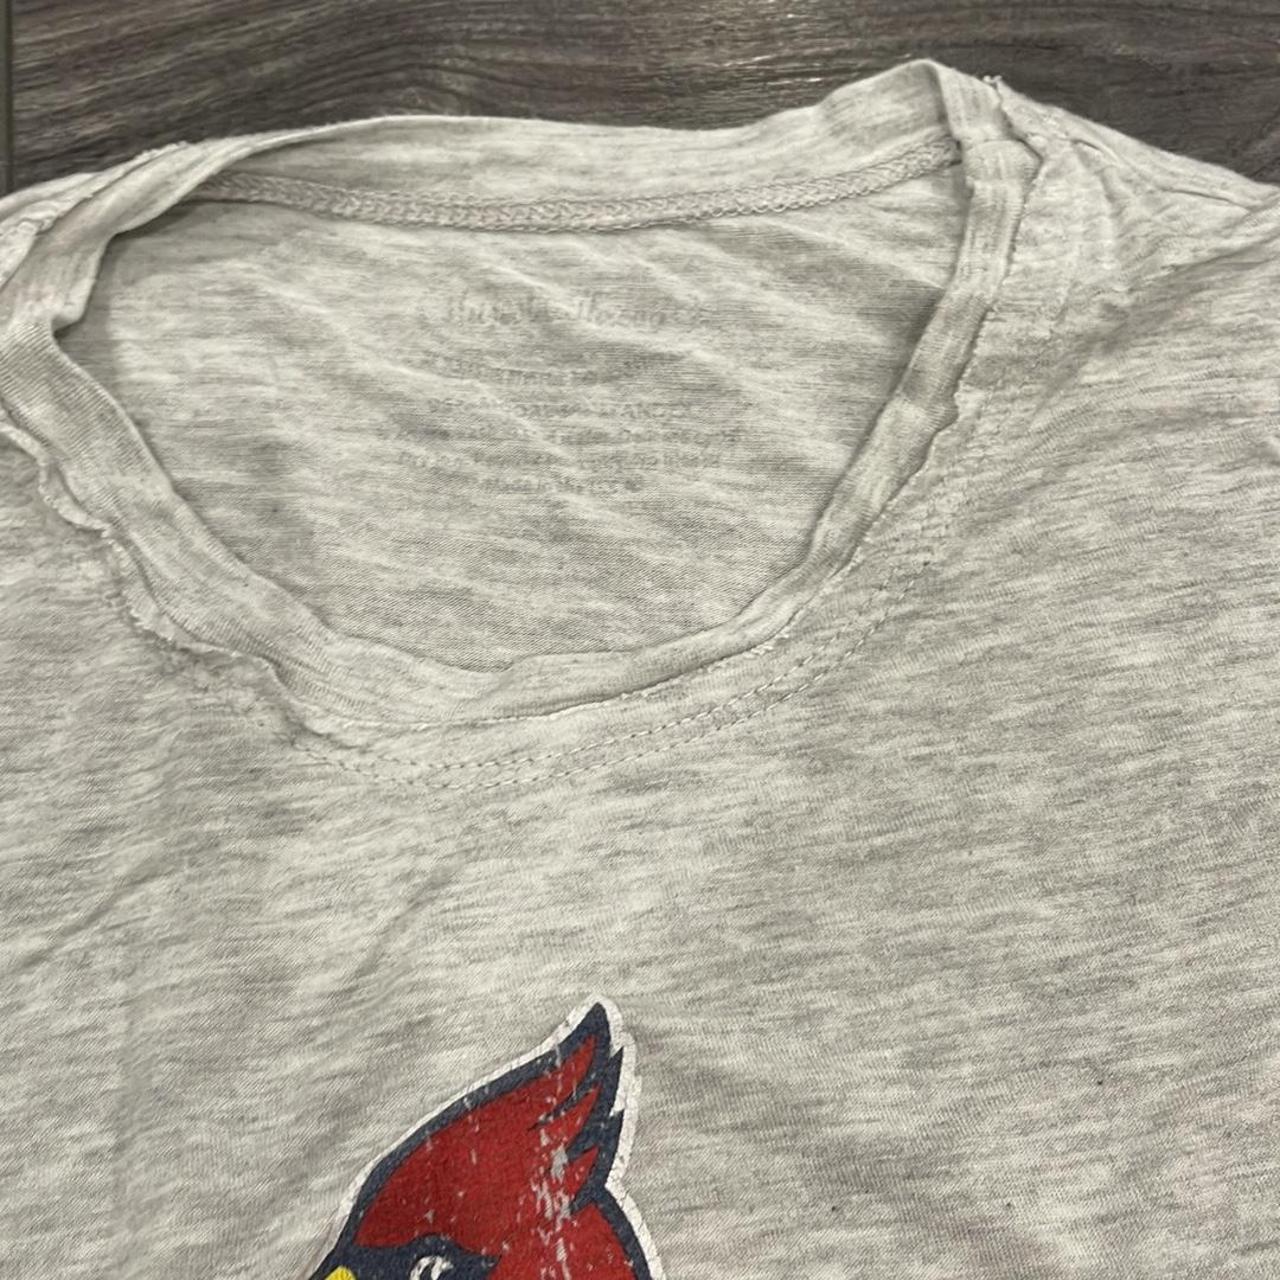 St. Louis Cardinals baseball T-shirt (couple stains - Depop